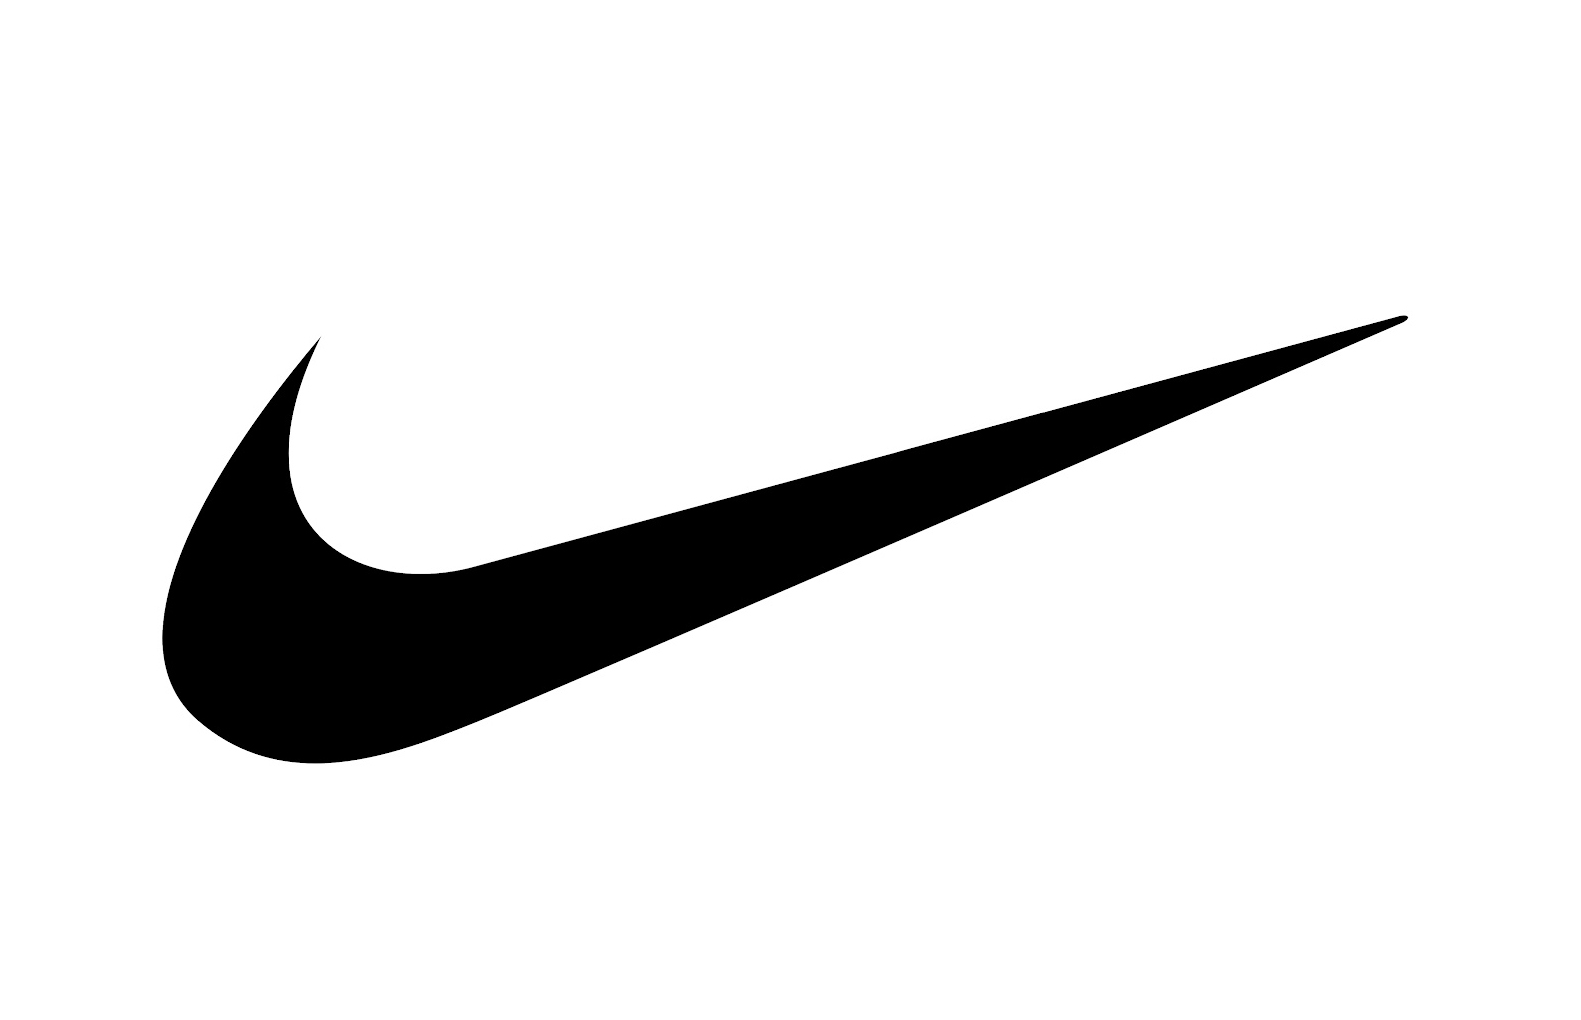 ¿Sabías que Nike copio el nombre y la forma del logo de la diosa griega